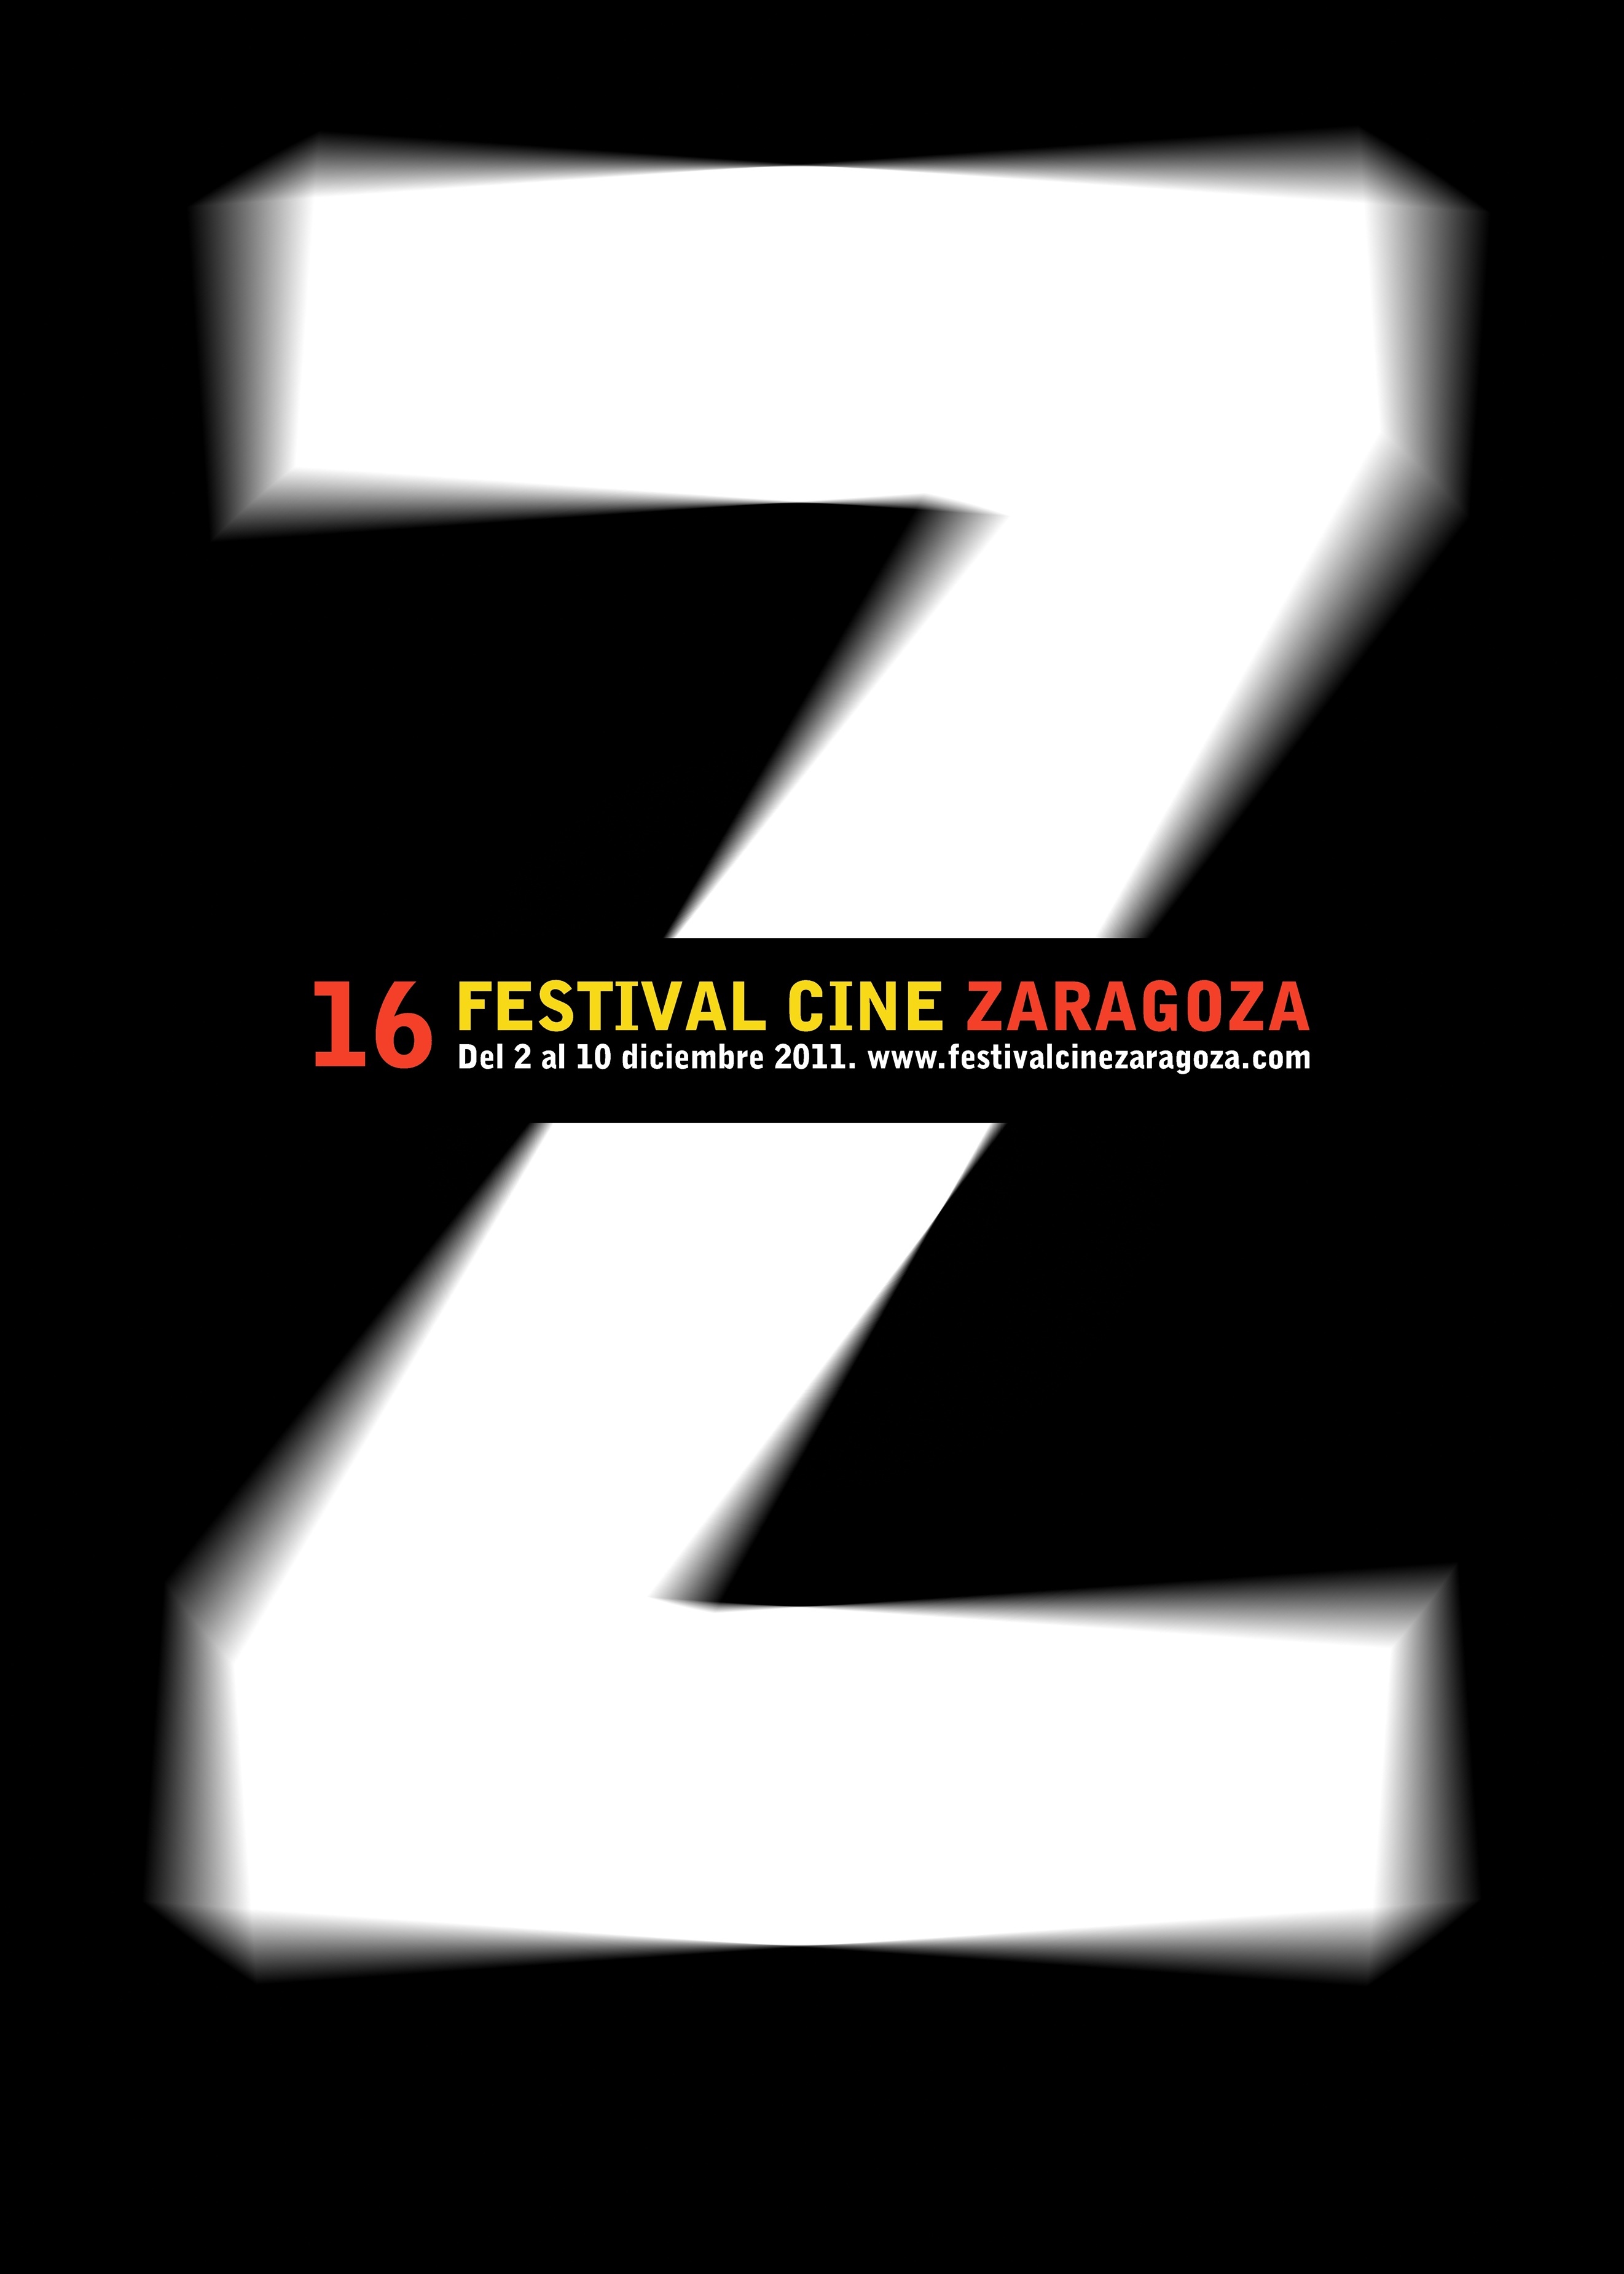 El Festival de Cine de Zaragoza organiza este martes una sesión de documentales y tres sesiones de cortos de ficción